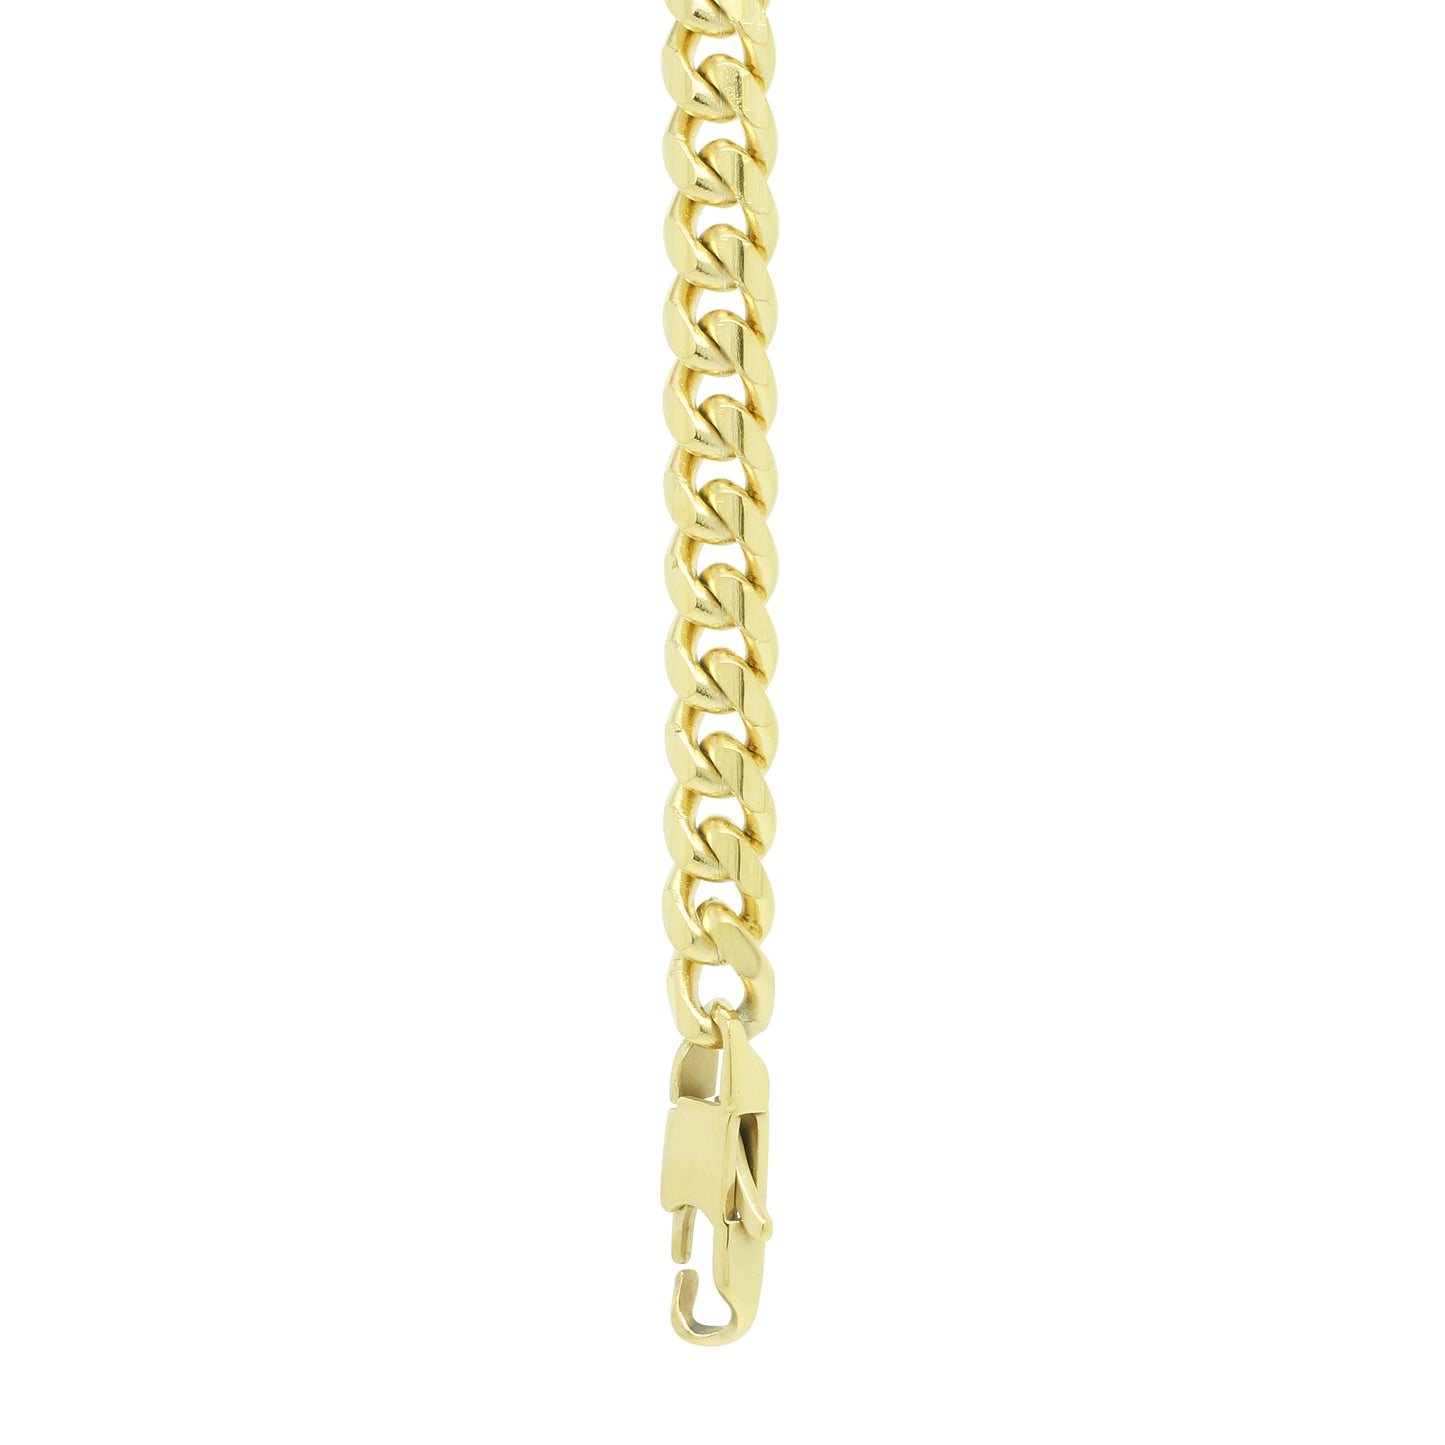 5mm Chain Bracelet - Gold